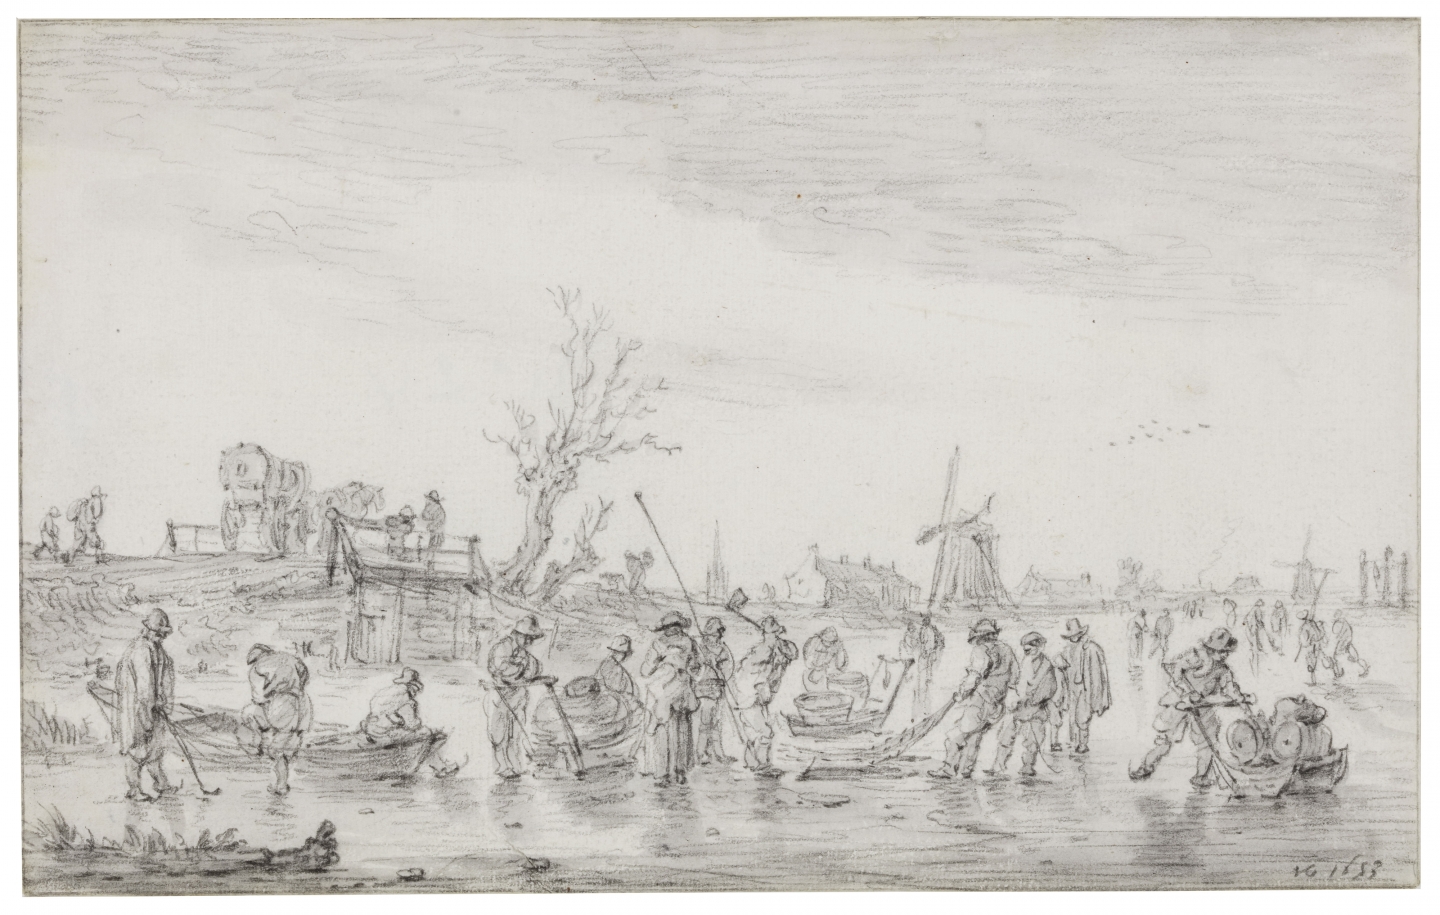 Jan van Goyen (Leyden 1596-1656 The Hague) Winter landscape with fishermen and skaters on the ice in Leyden overlooking Voorschoten (1653)